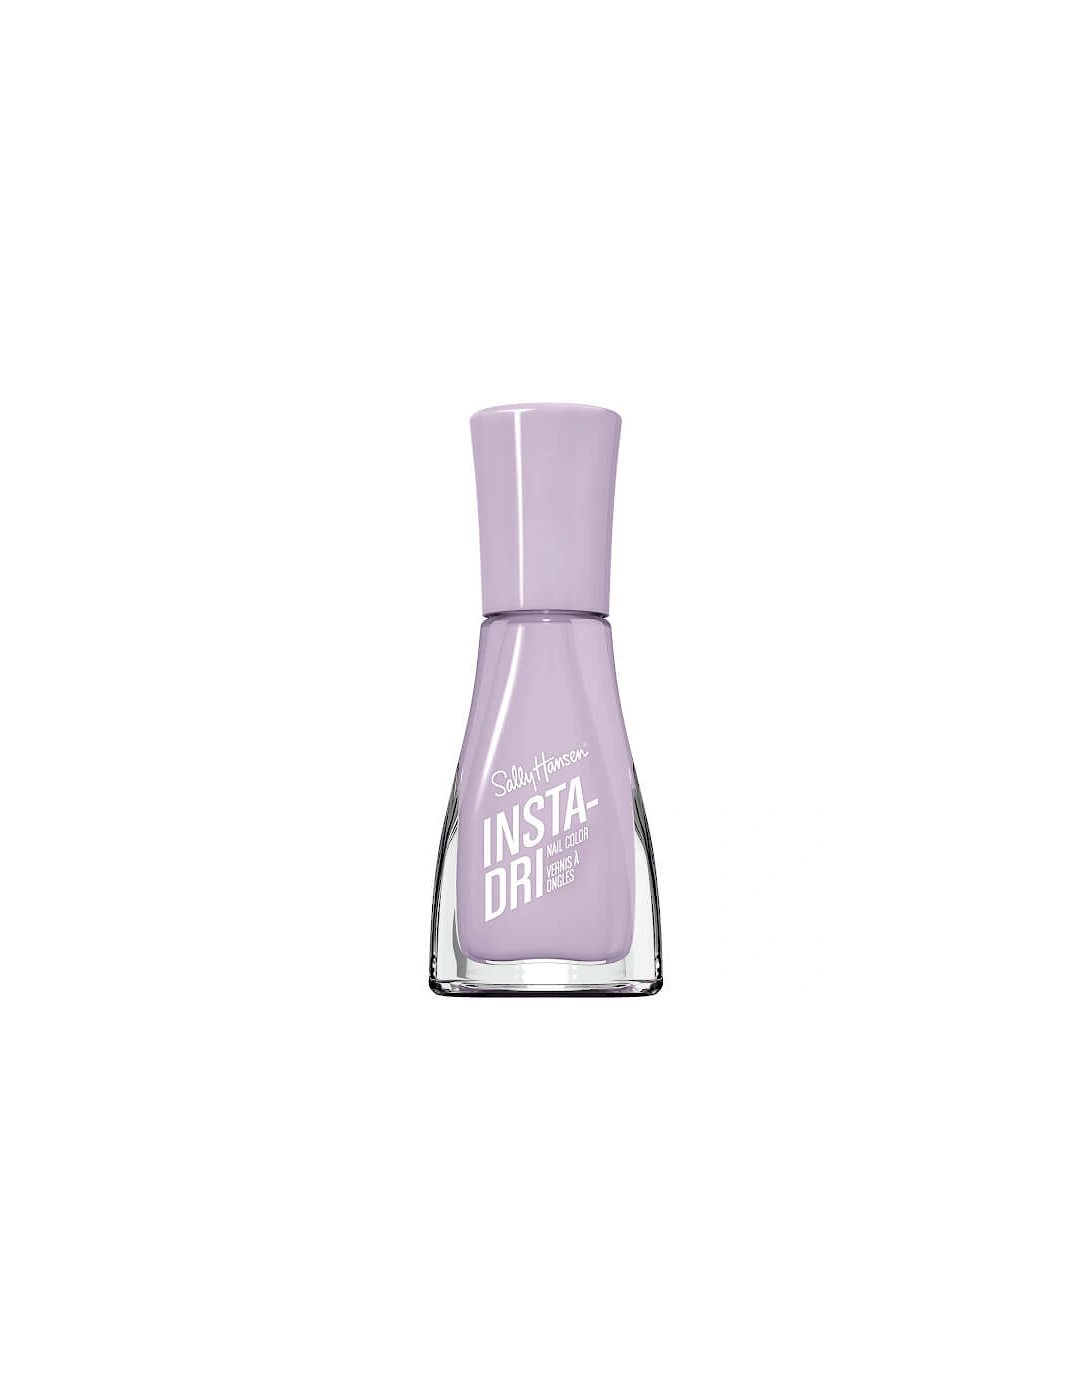 Insta Dri Fast Dry Nail Color Nail Poli Lacquer – 453 – Heather Hustle, 9ml, 2 of 1